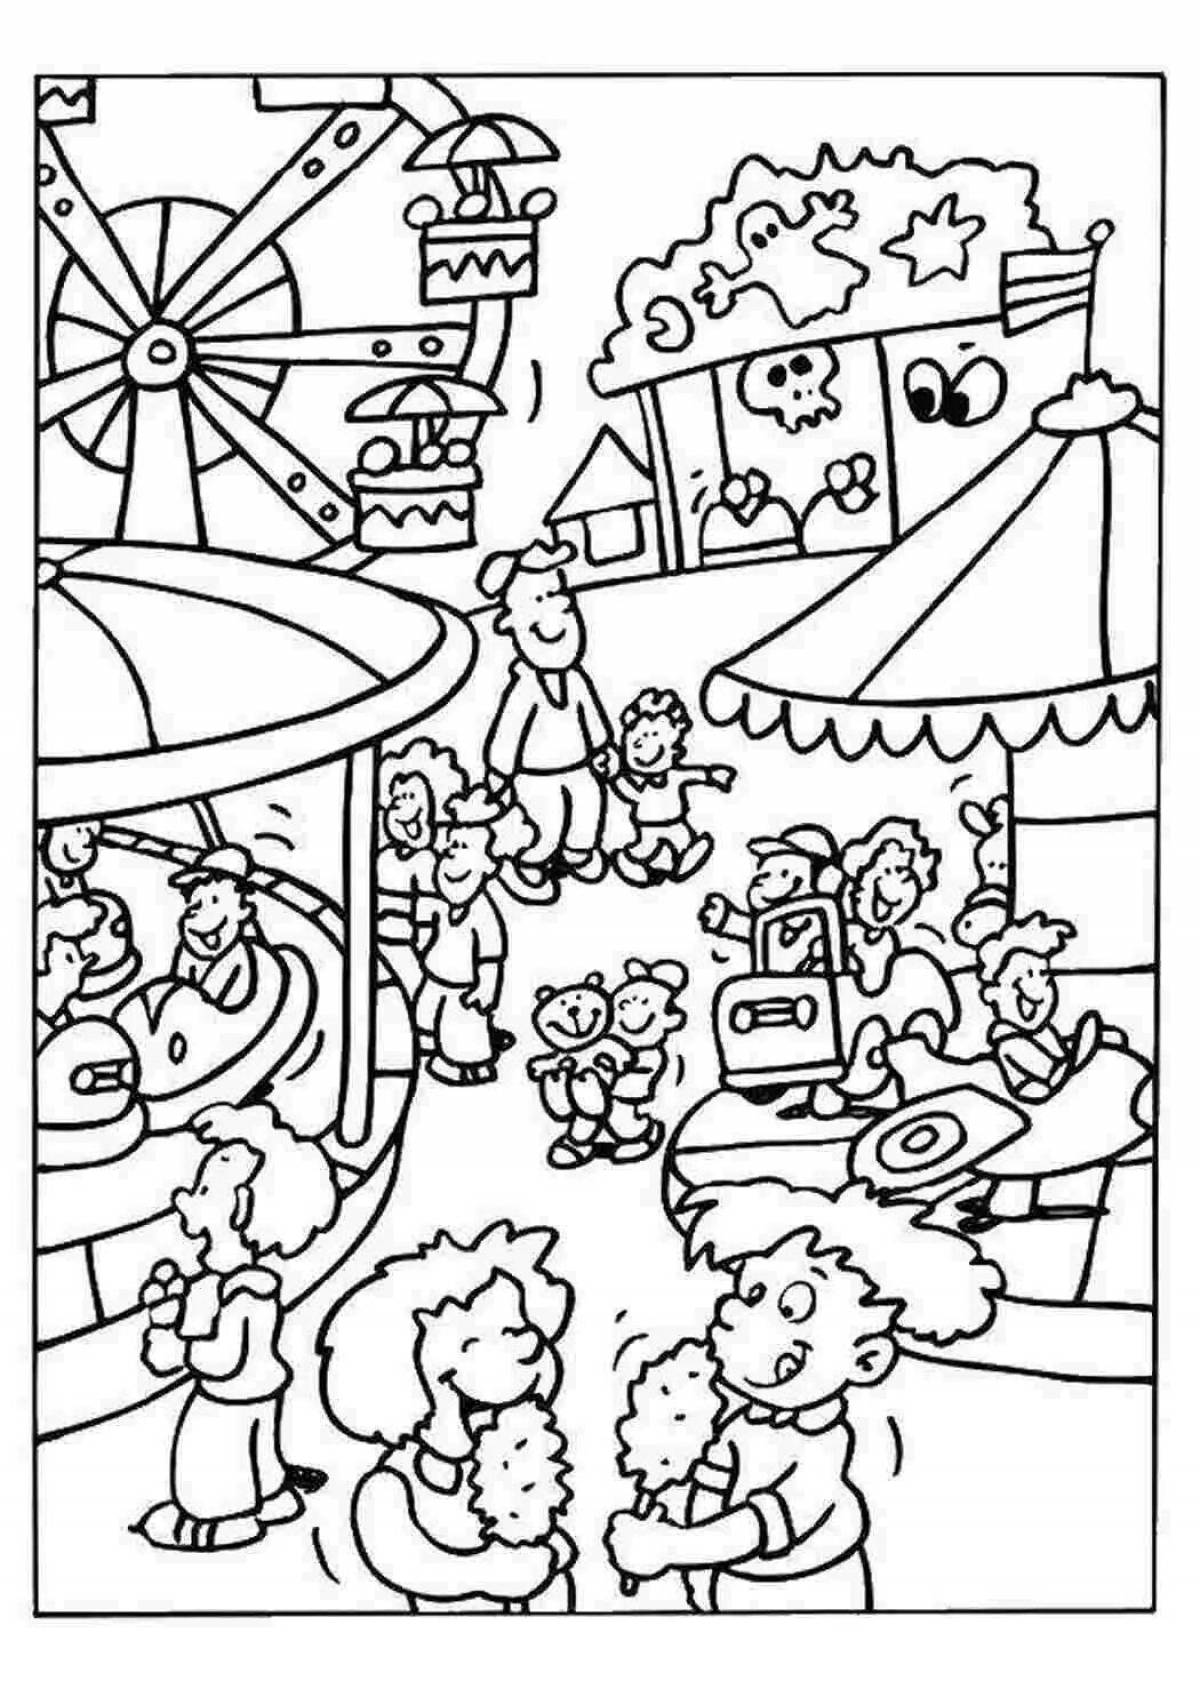 Fancy amusement park coloring book